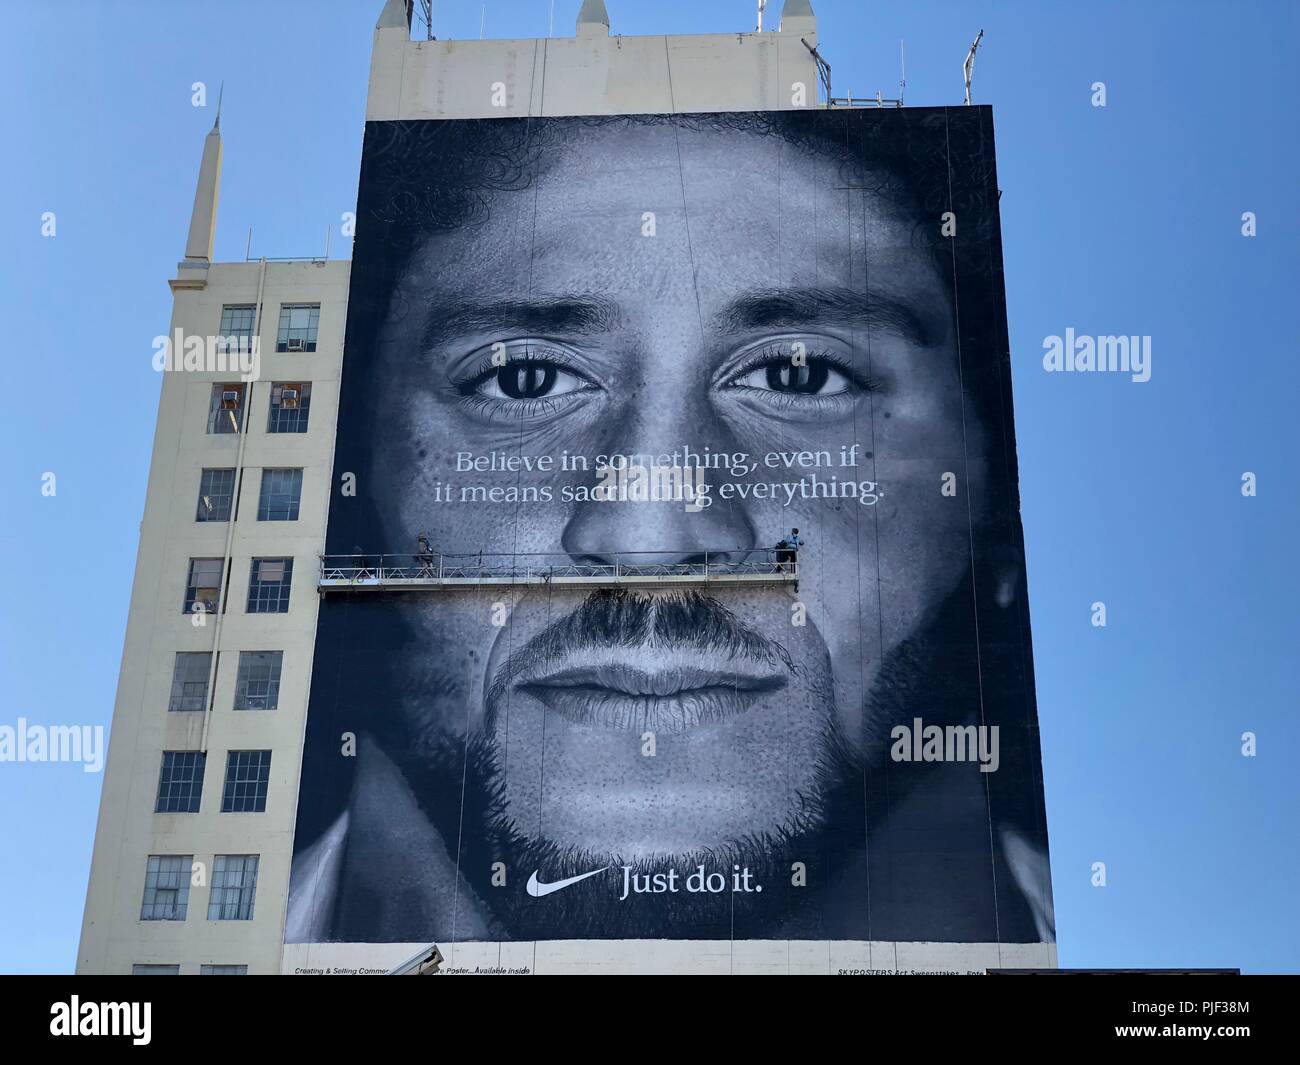 Los Angeles, USA. 06 Sep, 2018. Allgemeine Ansicht von Nike ad mit  ehemaligen San Francisco 49ers quarterback Colin Kaepernick zum 30.  Jahrestag der "zum Gedenken an Just Do It"-Kampagne an der Seite